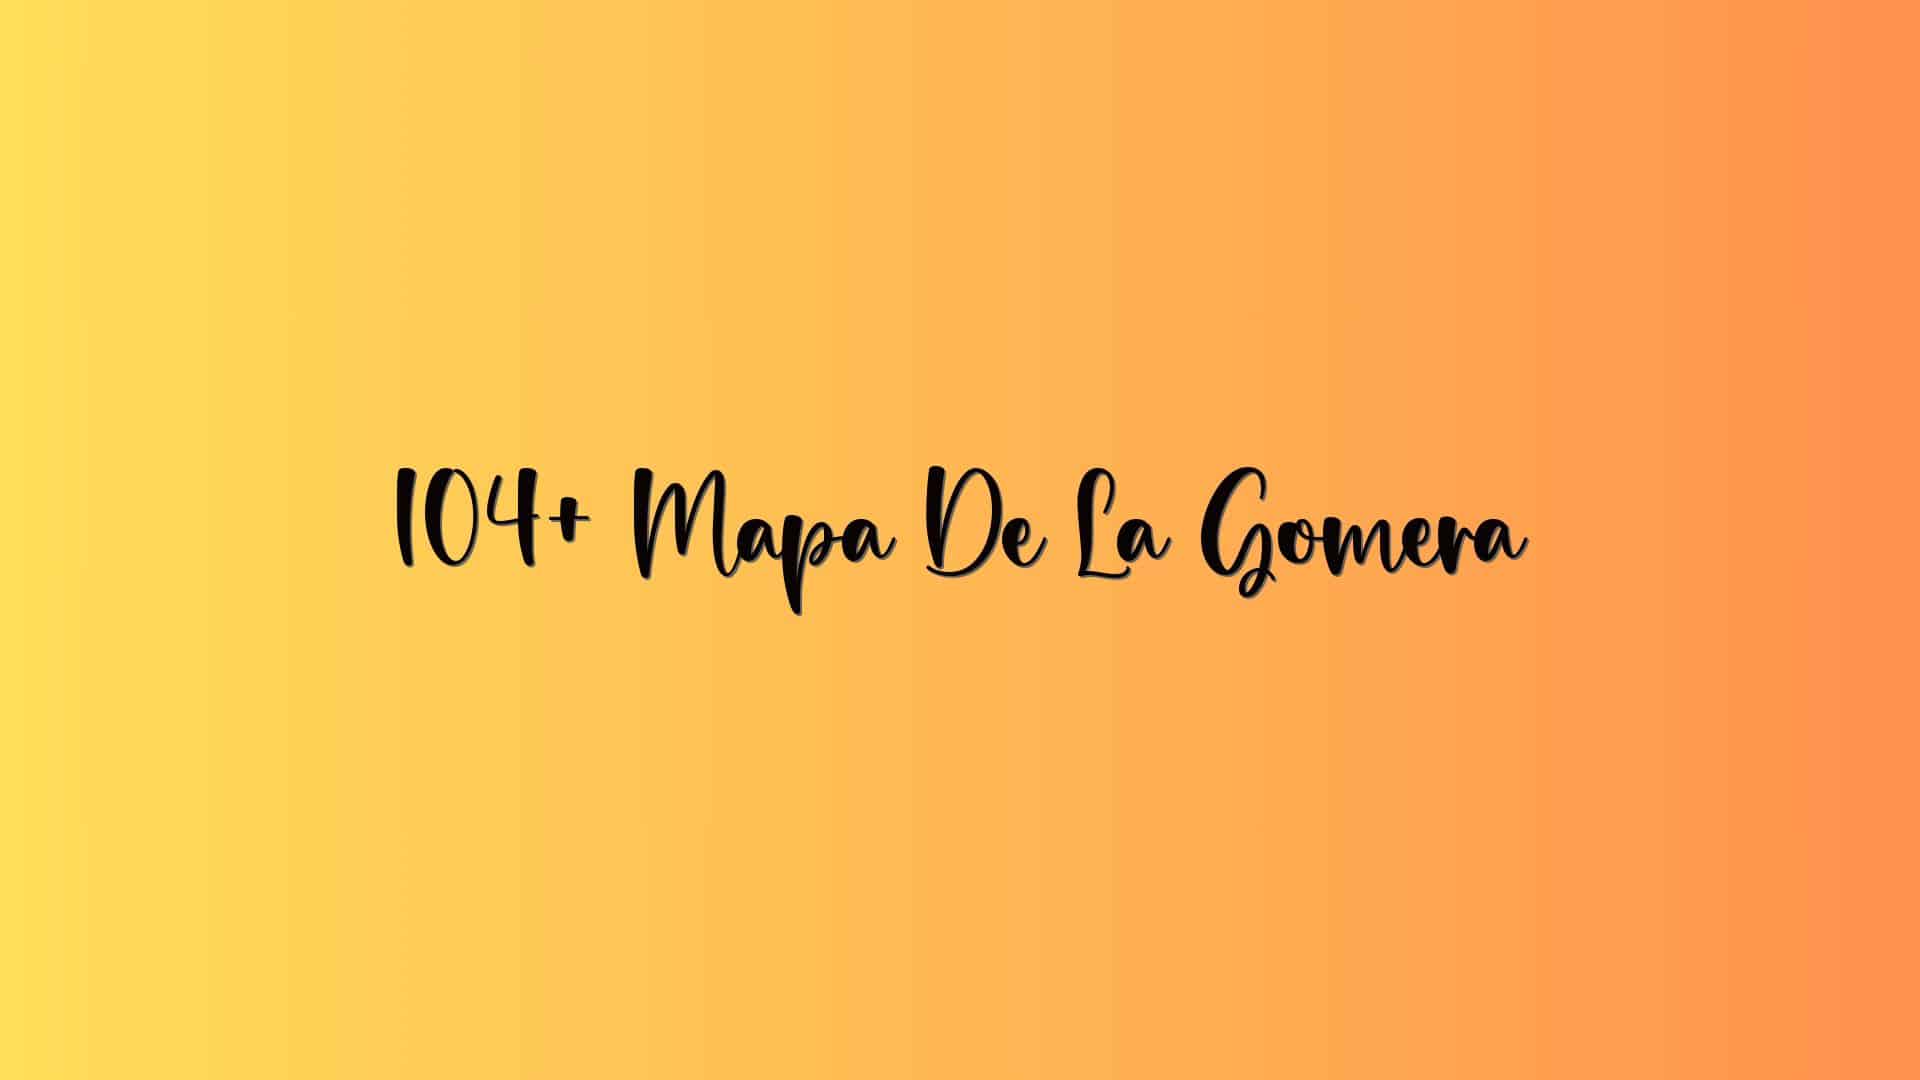 104+ Mapa De La Gomera